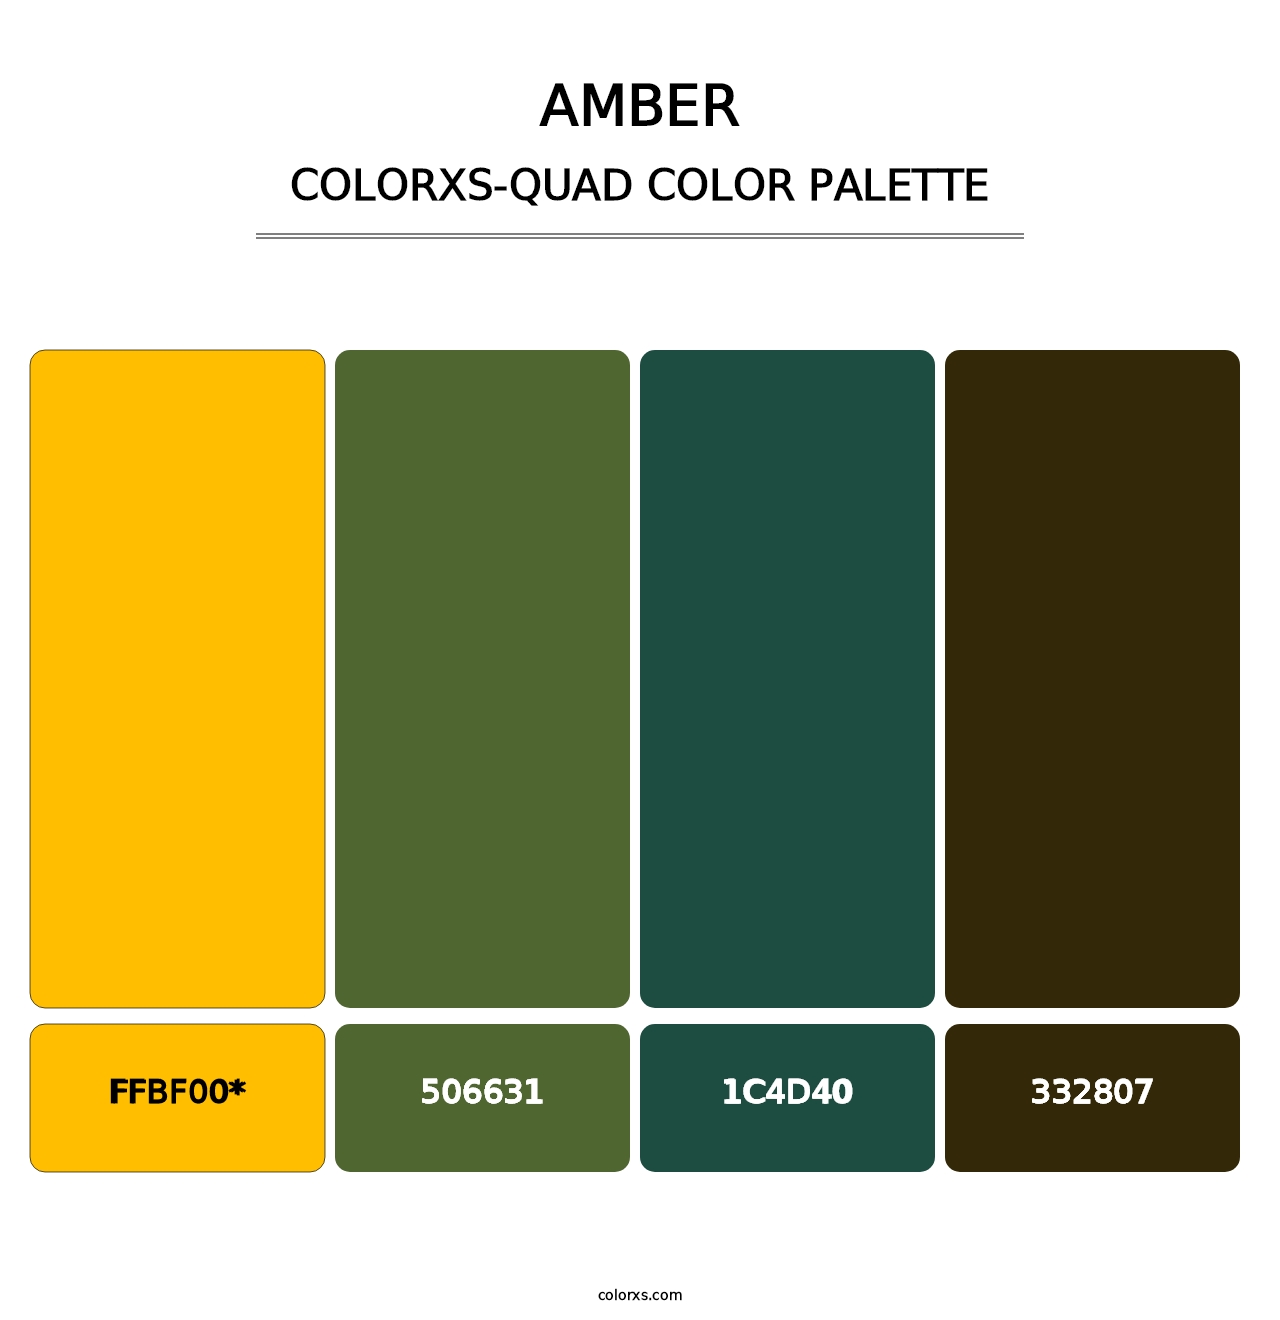 Amber - Colorxs Quad Palette